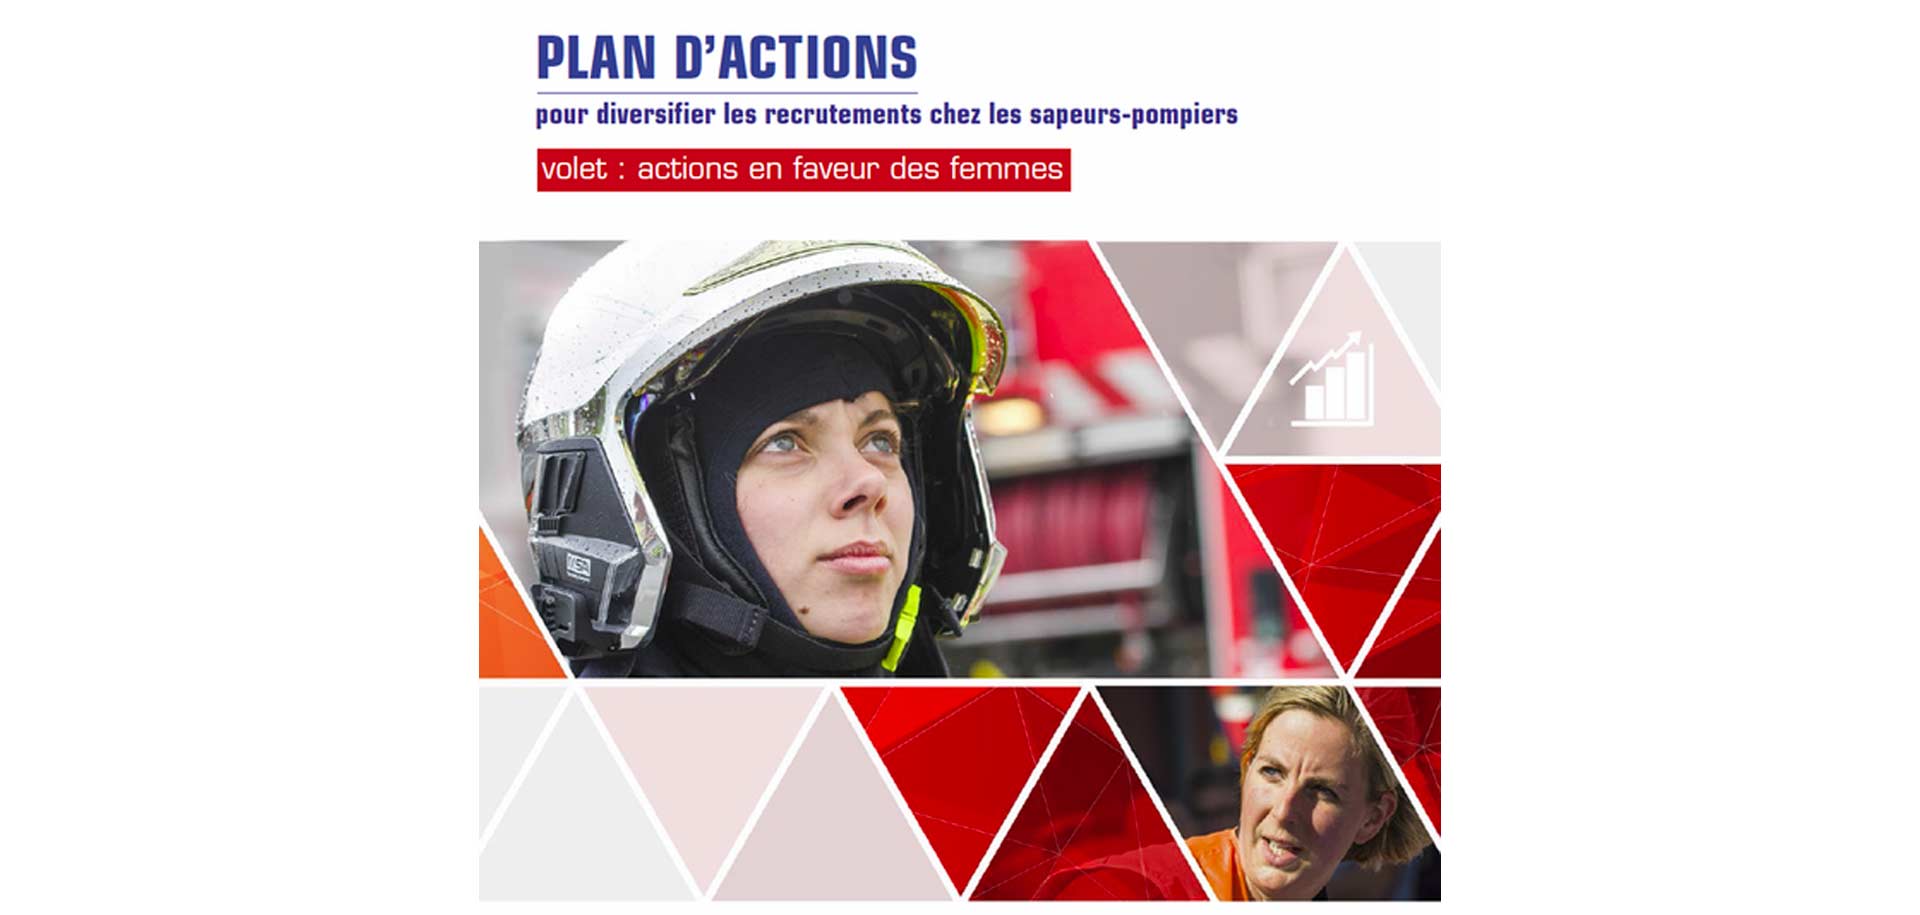 Actions en faveur des femmes sapeurs-pompiers